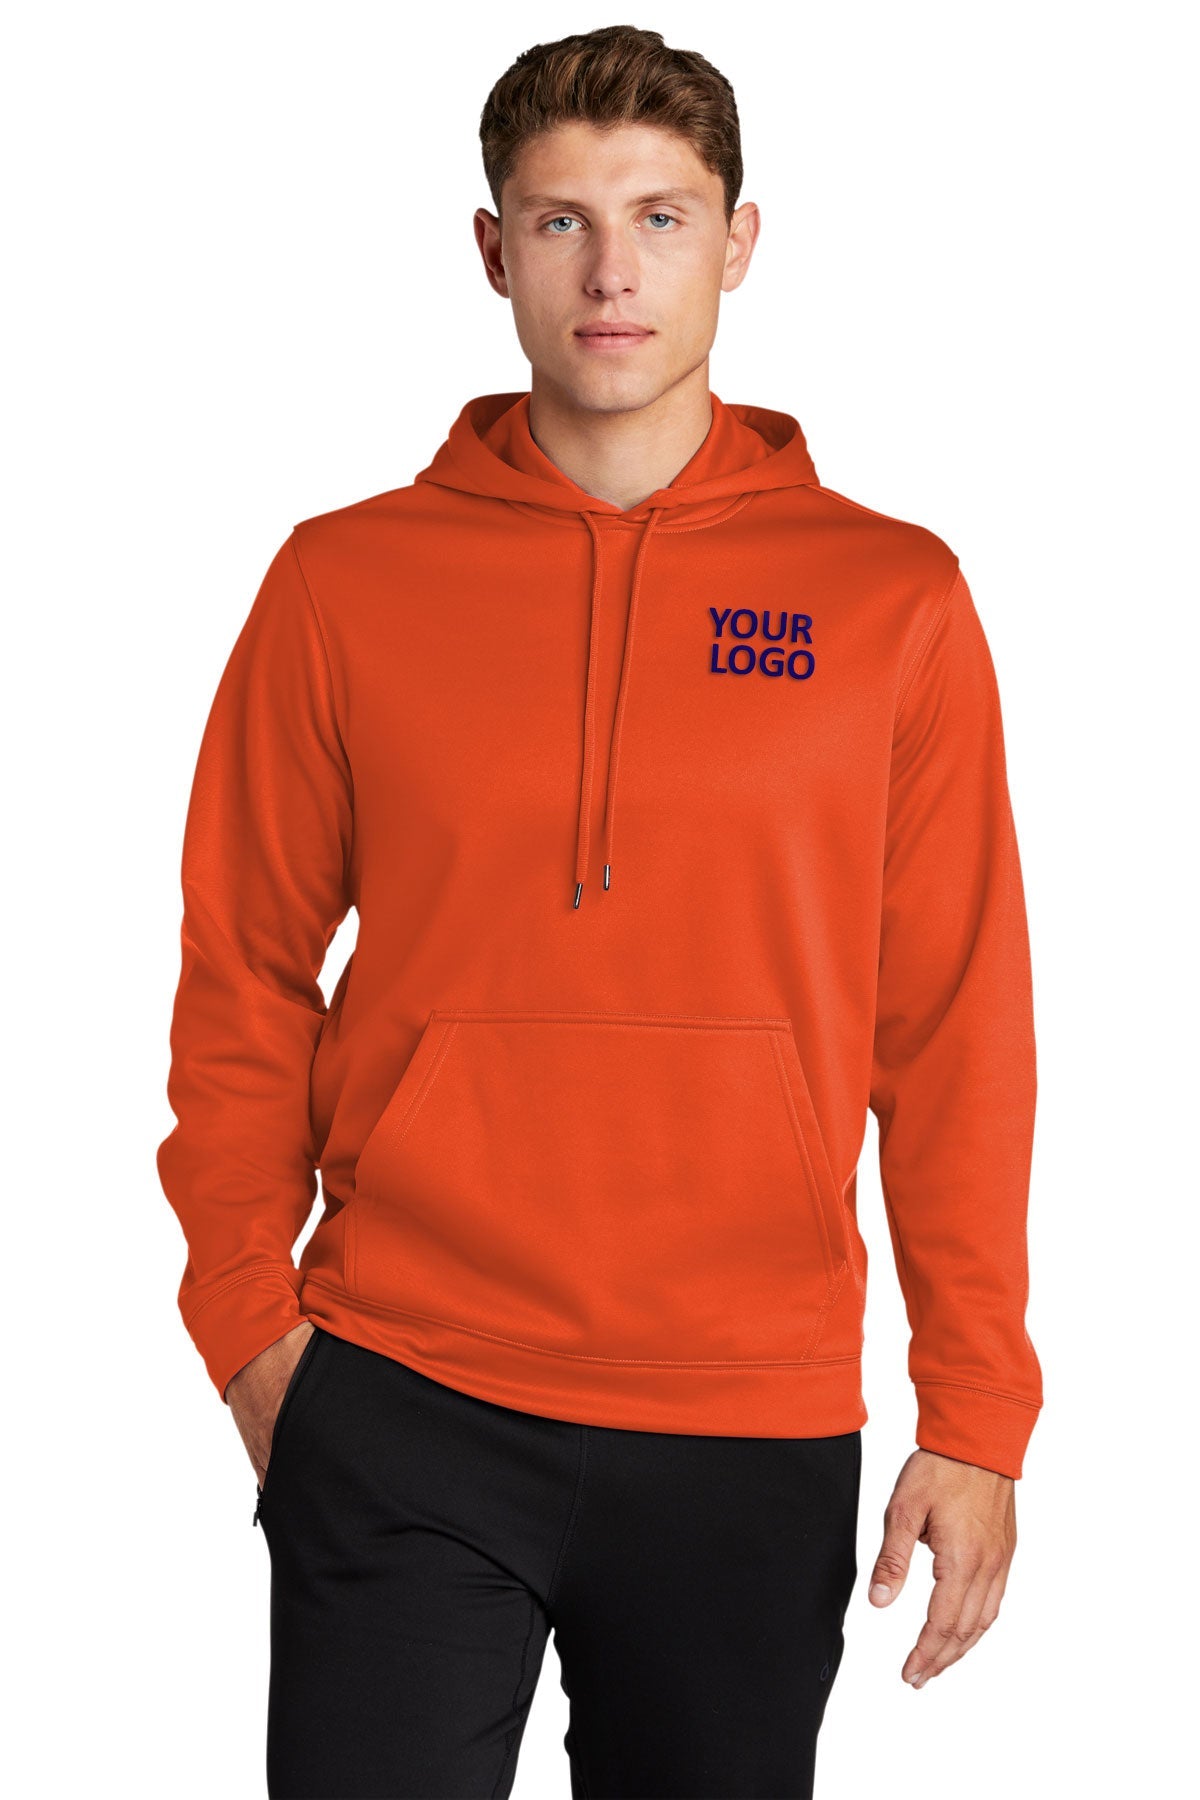 Sport-Tek Deep Orange F244 custom logo sweatshirts embroidered